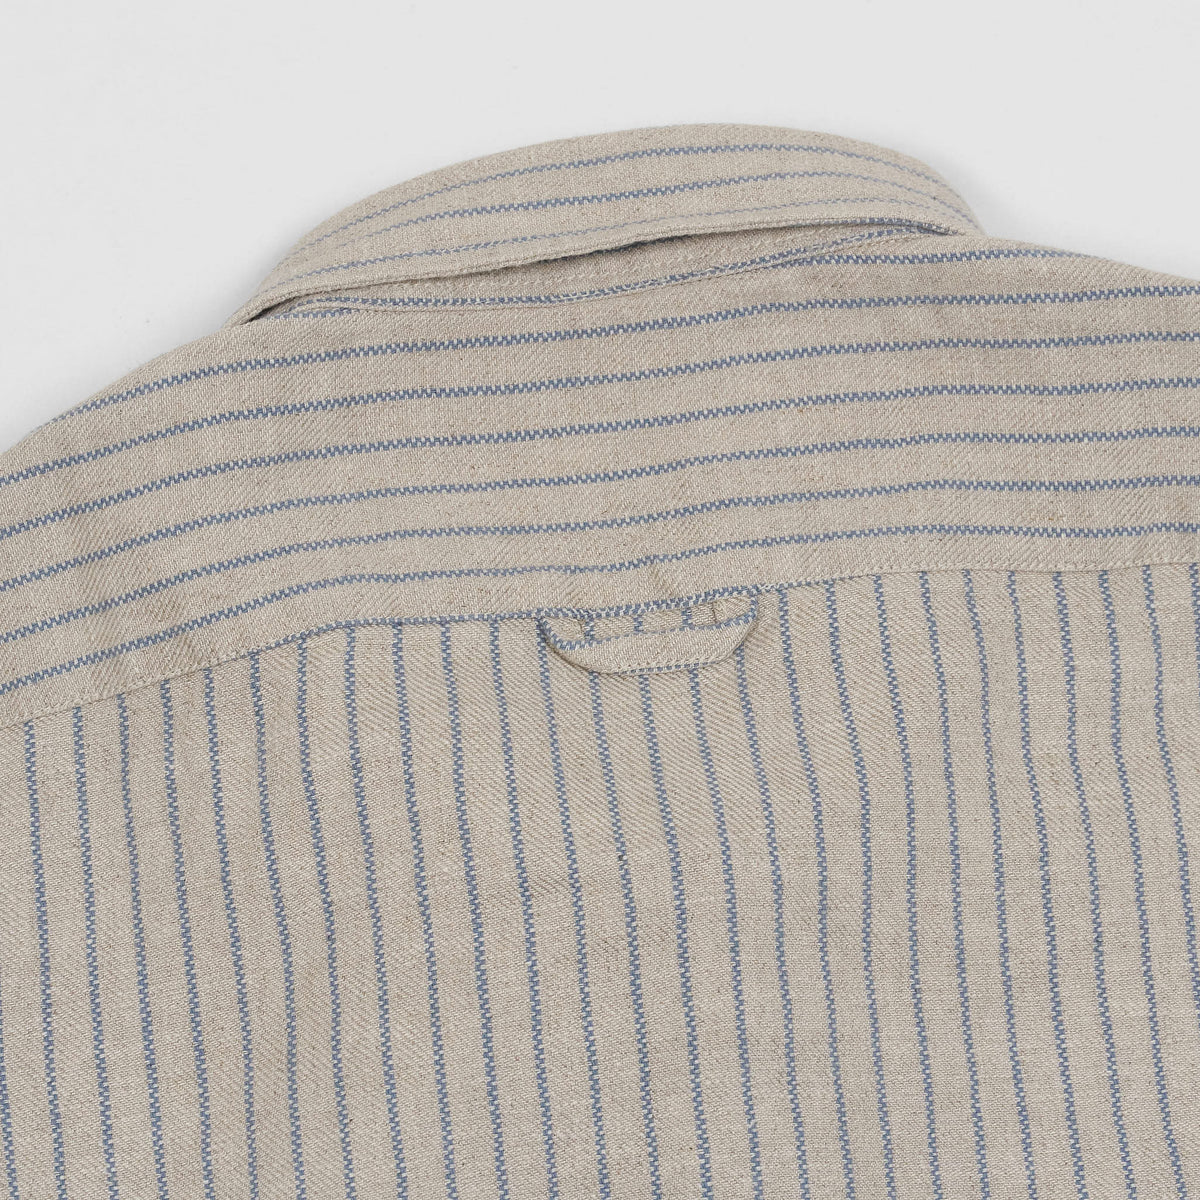 A.B.C.L. Long Sleeve Hemp/ Linen Long sleeve Shirt